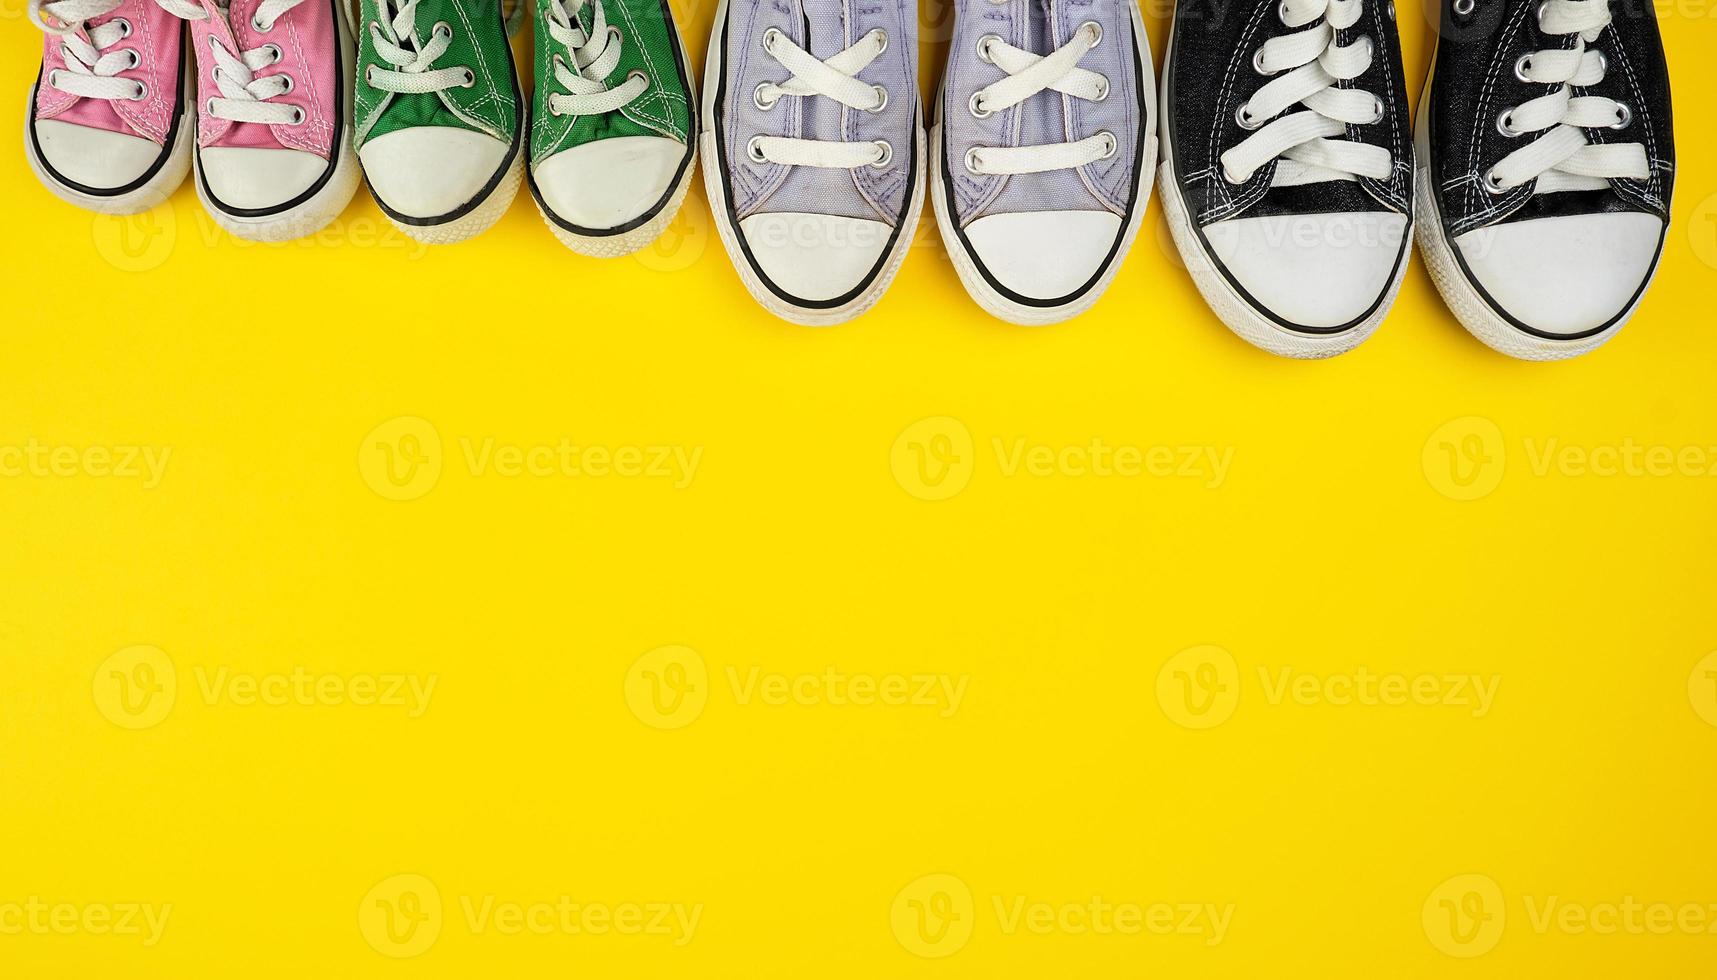 muitos tênis usados têxteis de tamanhos diferentes em um fundo amarelo foto